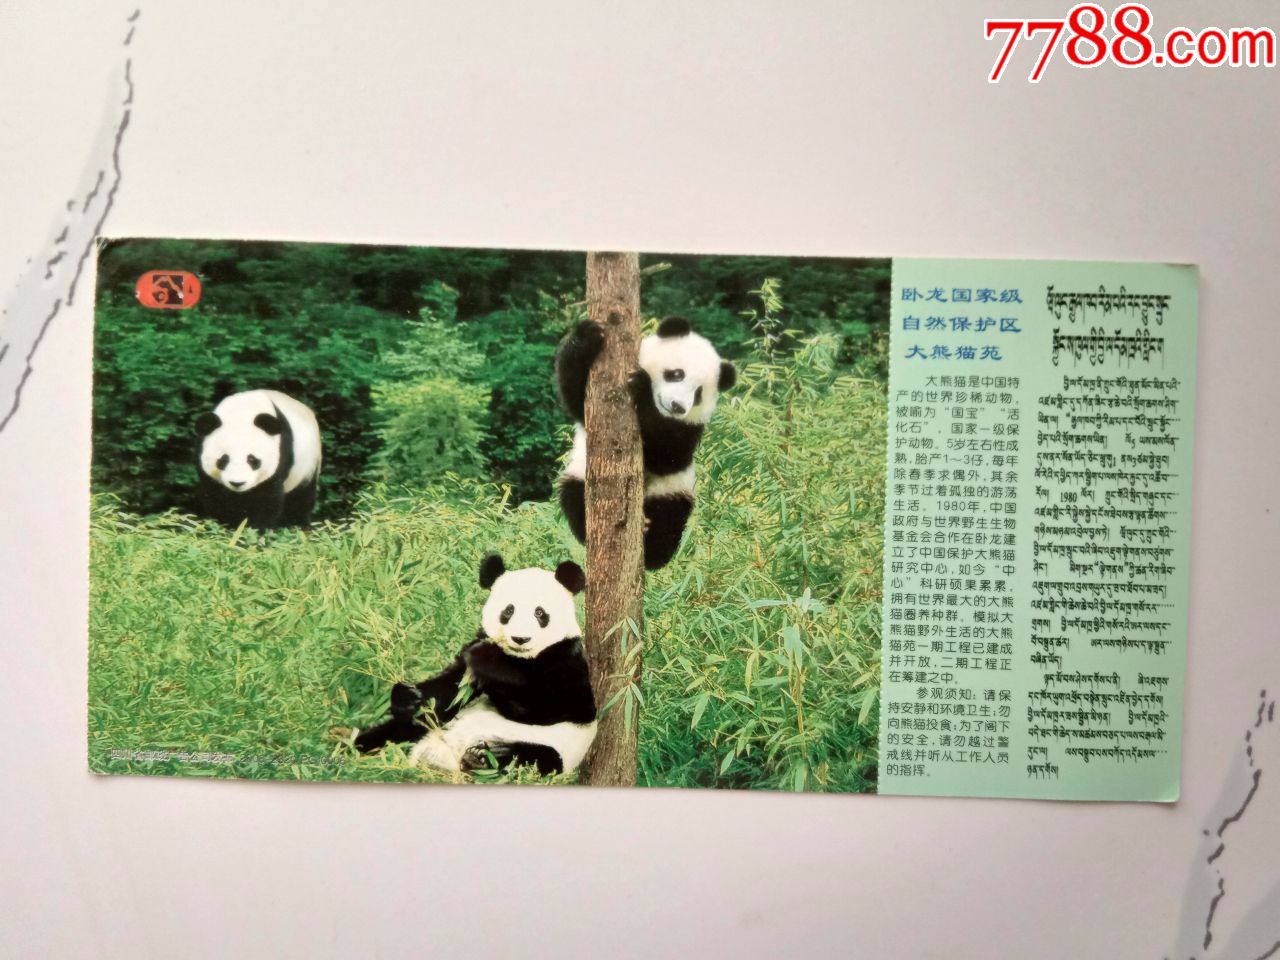 卧龙自然保护区大熊猫苑邮资门票